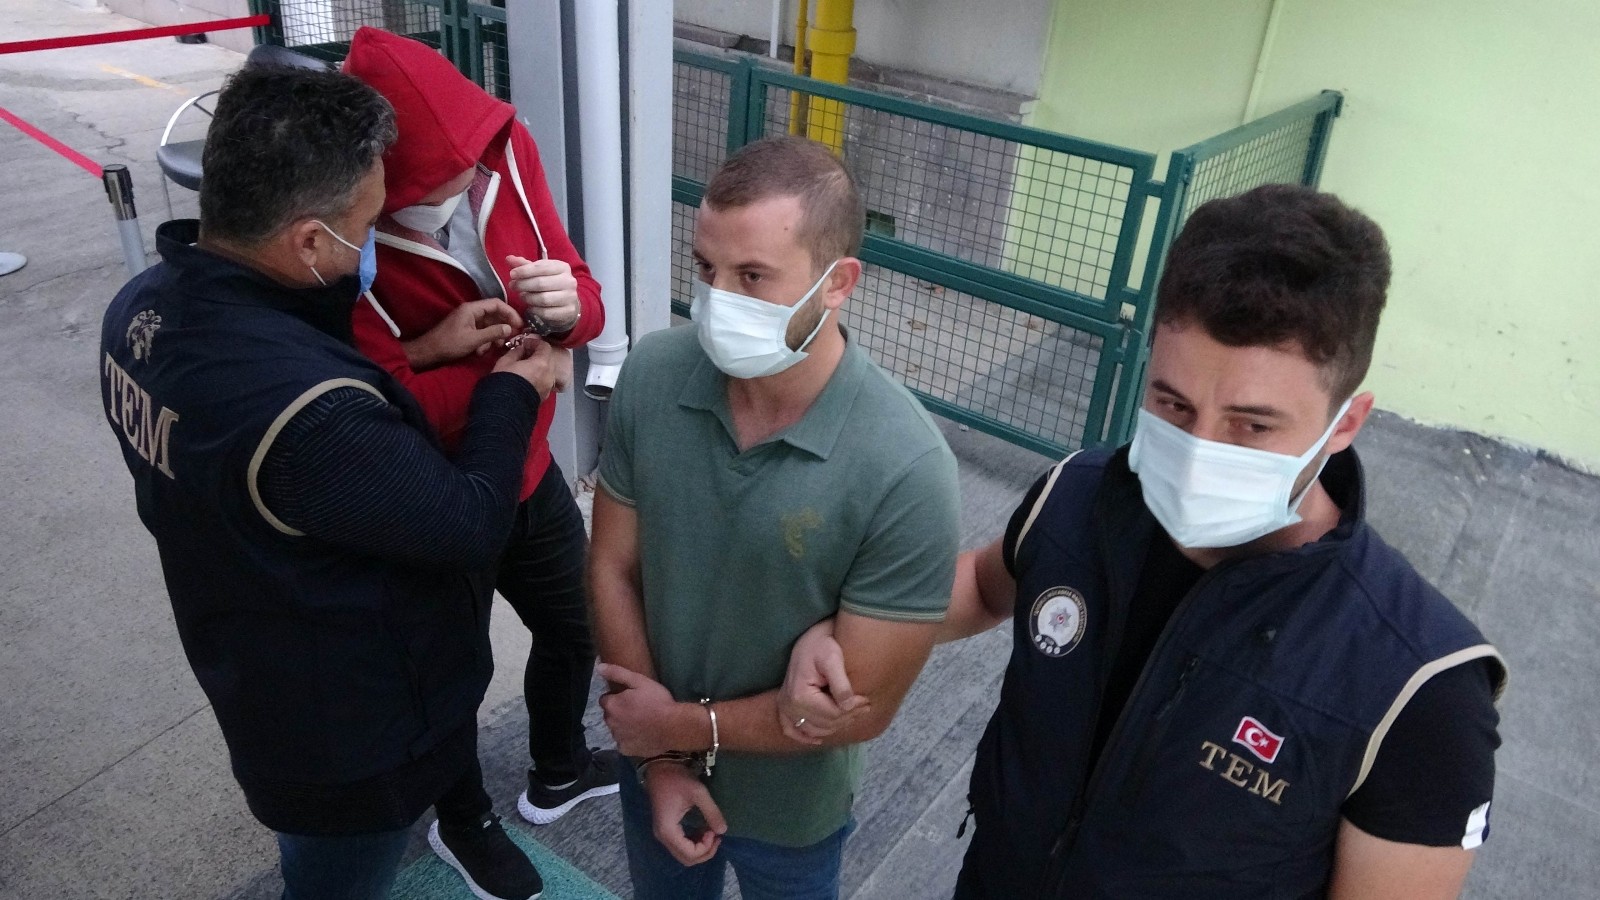 Samsun'da FETÖ'den 1 araştırma görevlisi ve 2 üniversite öğrencisi gözaltına alındı
